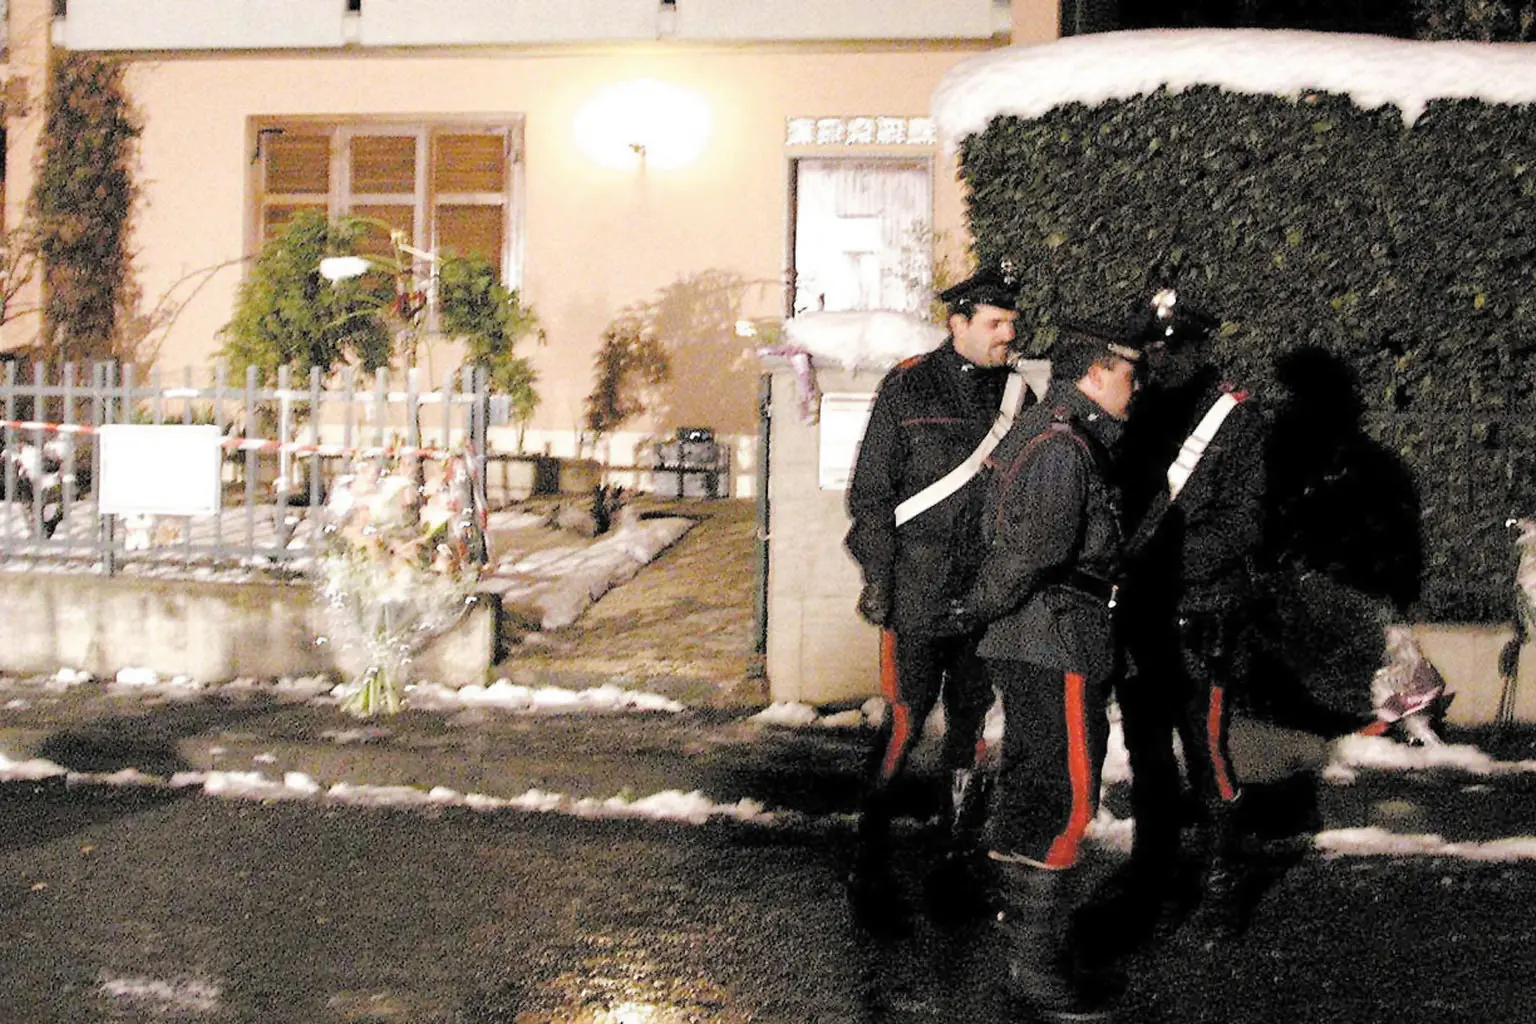 La villetta in cui è avvenuto il duplice omicidio a Novi Ligure (Ansa)